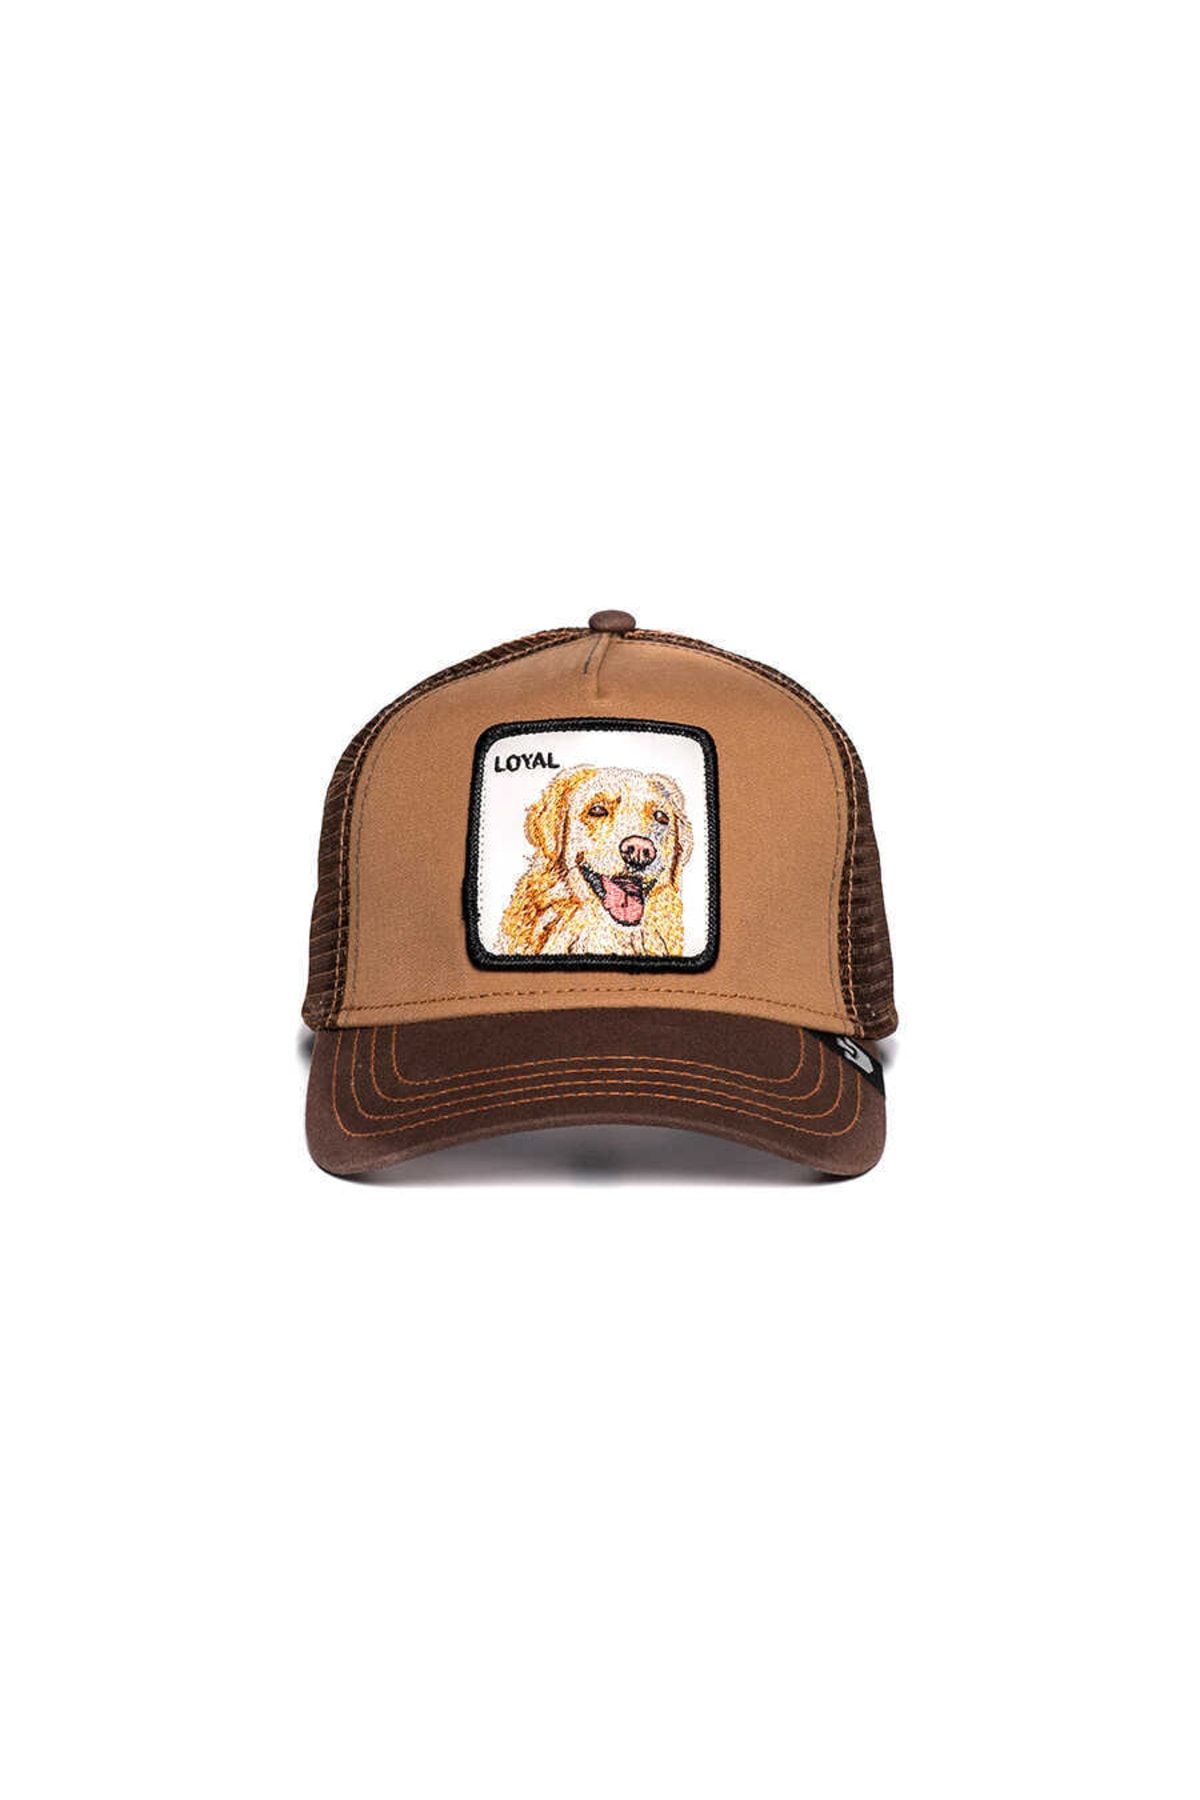 Goorin Bros . The Loyal Dog ( Golden Köpek Figürlü ) Şapka 101-0505 Kahverengi Standa